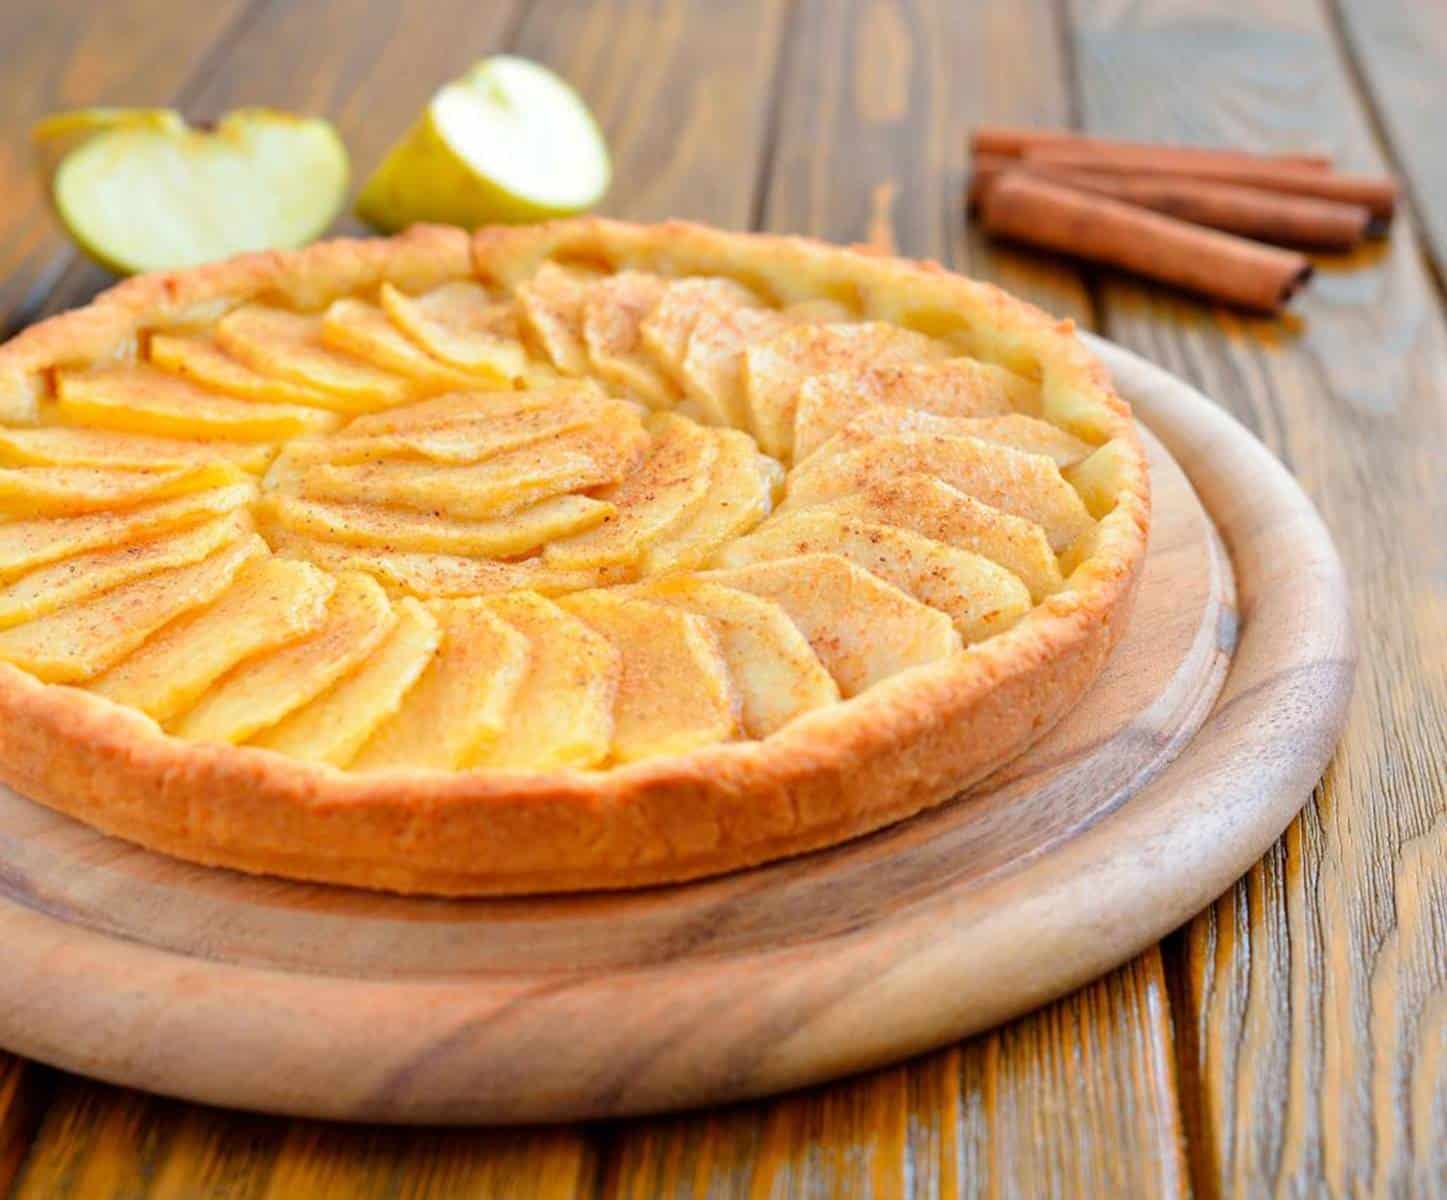 Deliciosa receita de 5 minutos: prepare esta torta de maçã no micro-ondas